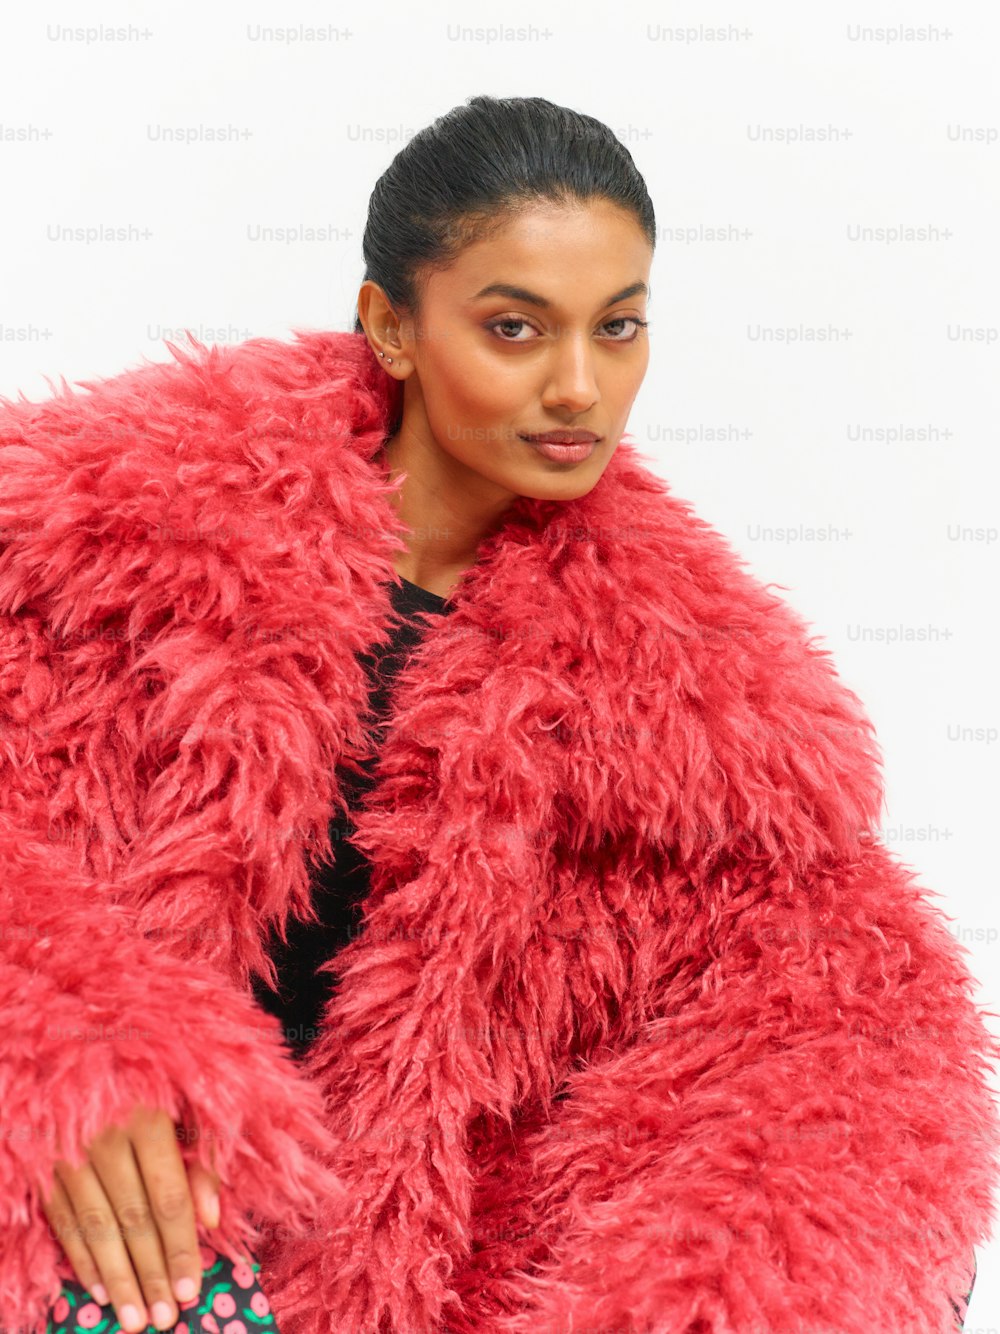 une femme dans un manteau de fourrure rouge posant pour une photo